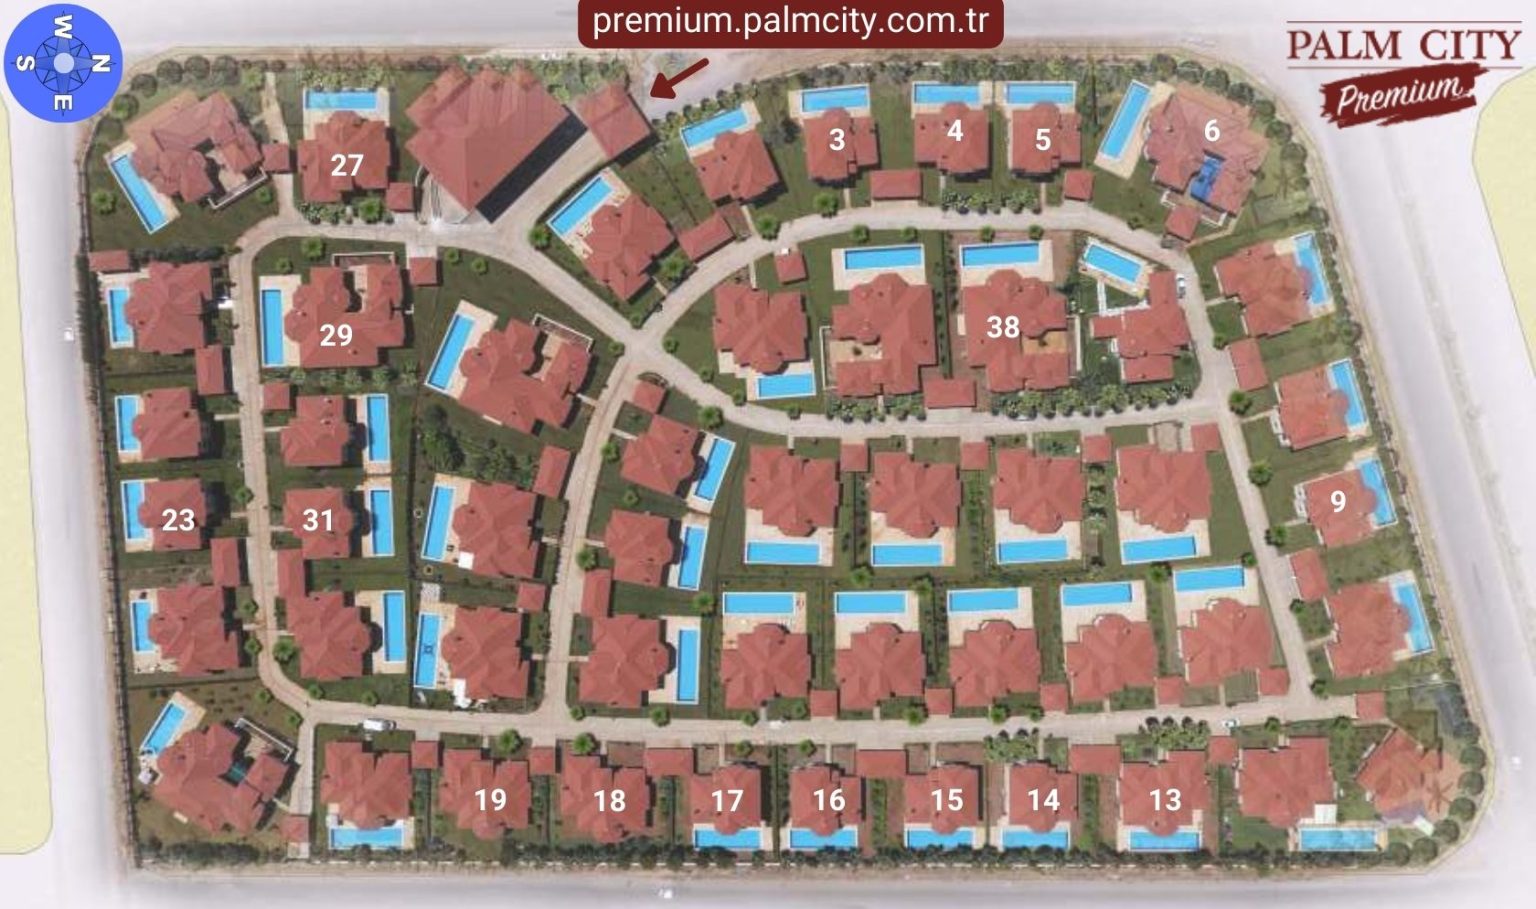 Palm City Premium Vaziyet Planı ve Satıştaki Ticari Dubleksler